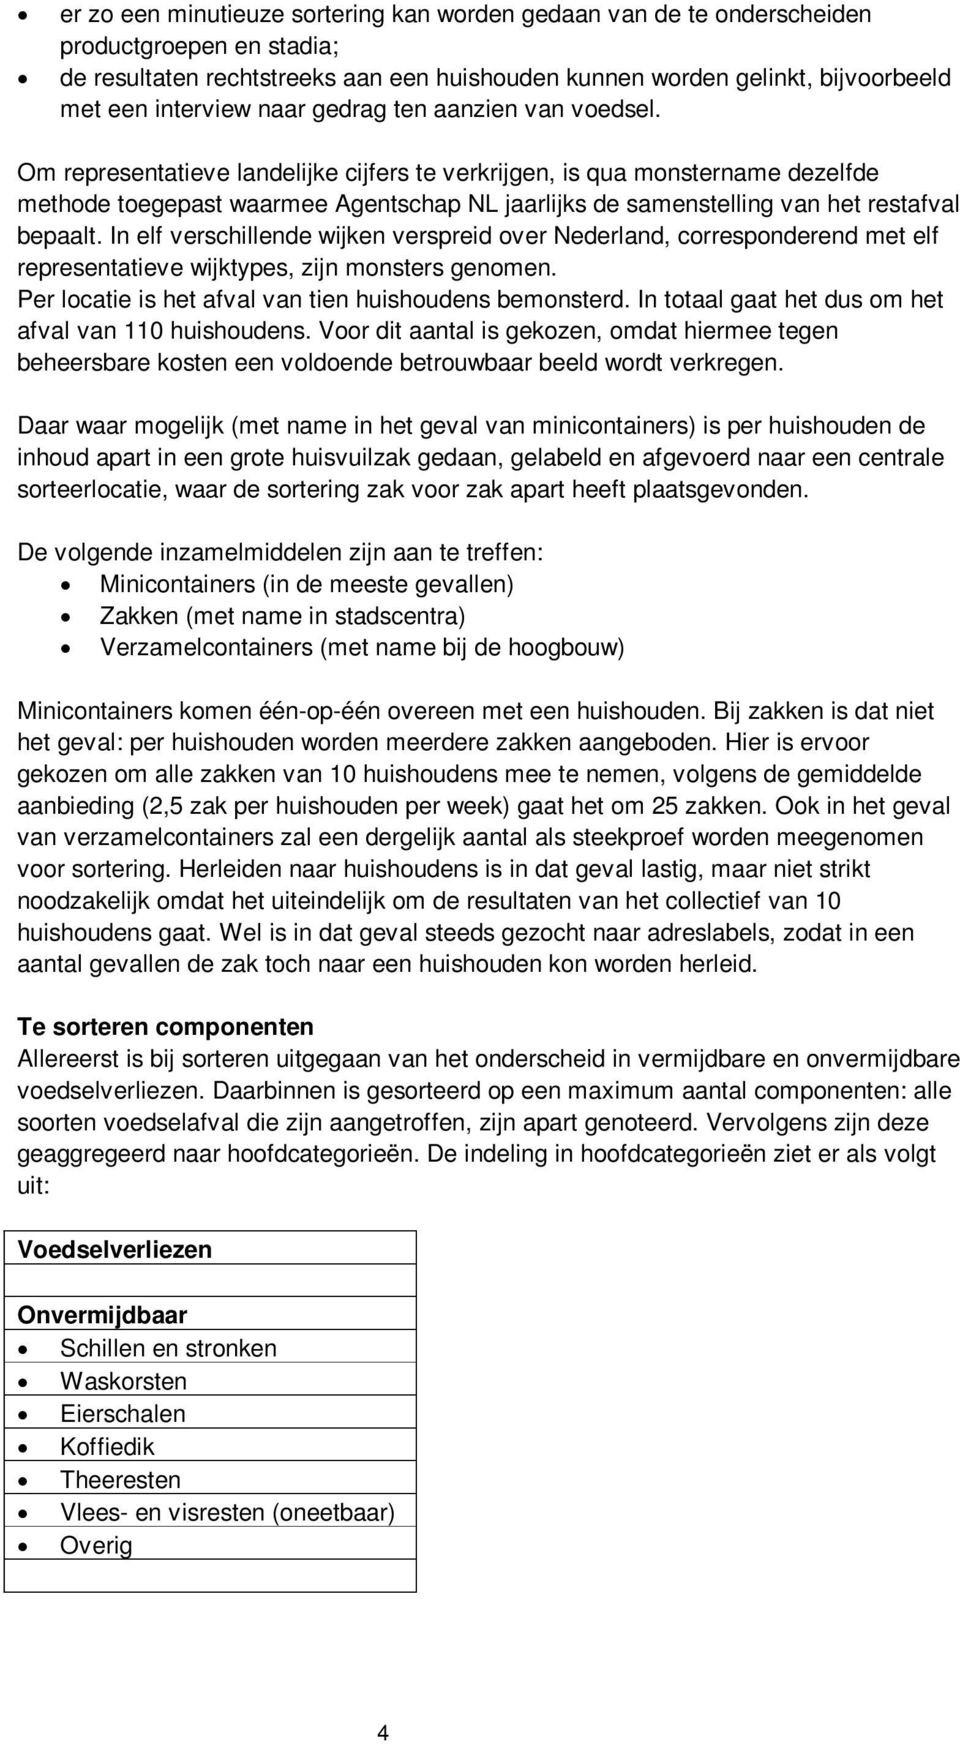 Om representatieve landelijke cijfers te verkrijgen, is qua monstername dezelfde methode toegepast waarmee Agentschap NL jaarlijks de samenstelling van het restafval bepaalt.